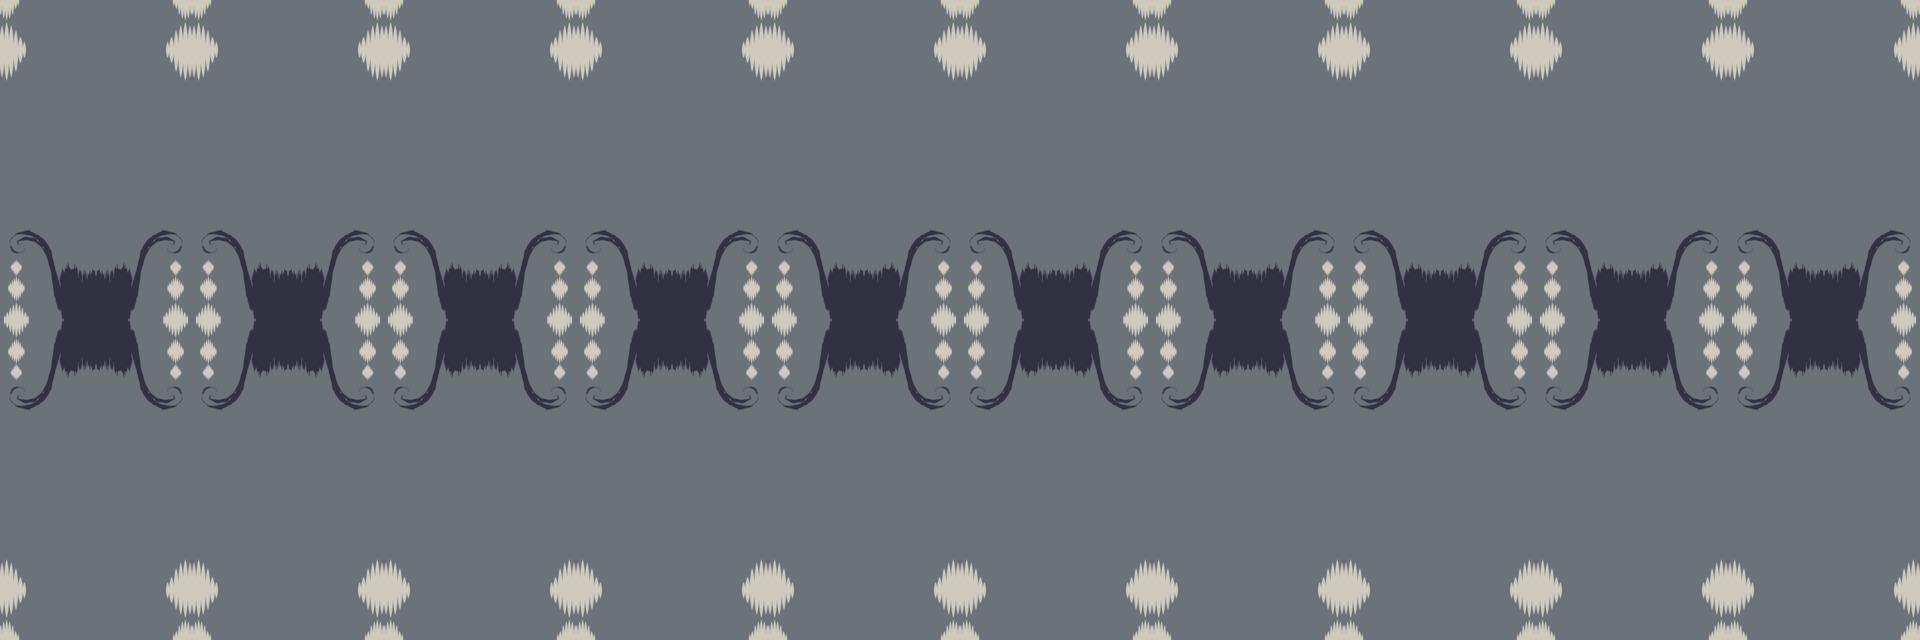 nahtloses muster der ikat-diamantstammeshintergründe. ethnische geometrische ikkat batik digitaler vektor textildesign für drucke stoff saree mughal pinsel symbol schwaden textur kurti kurtis kurtas